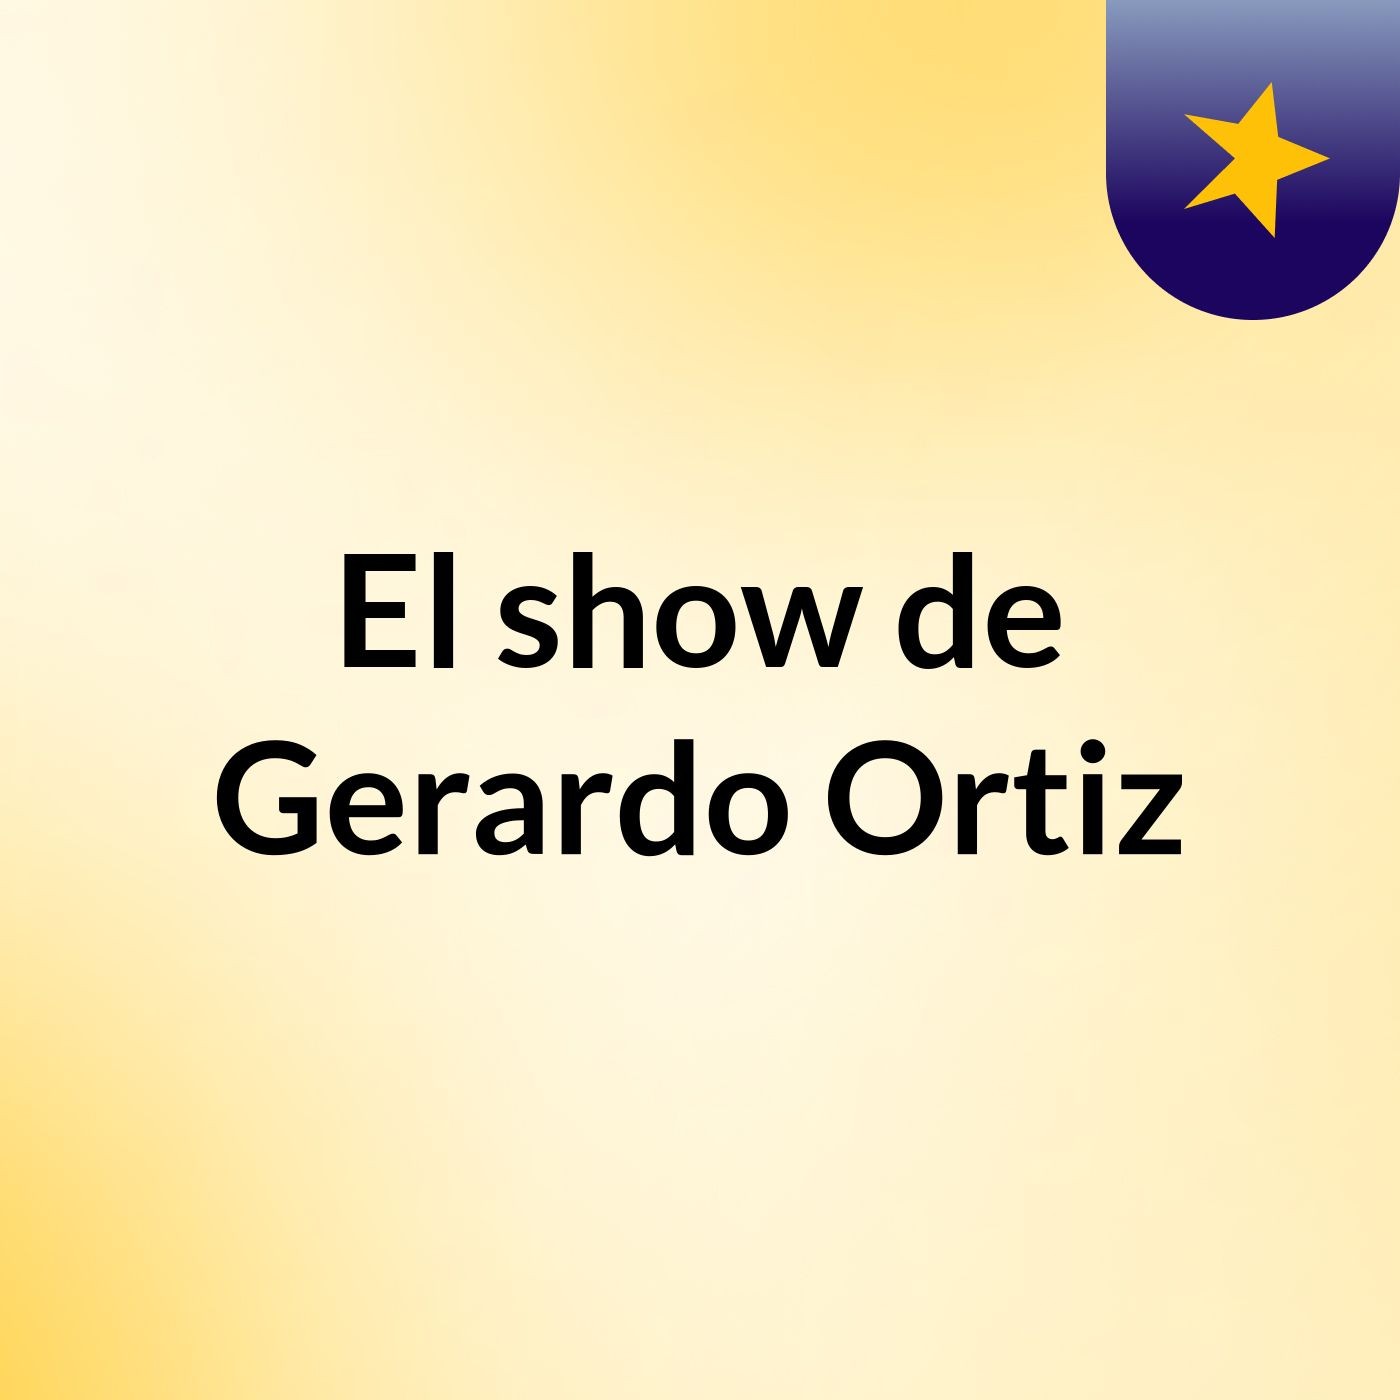 El show de Gerardo Ortiz